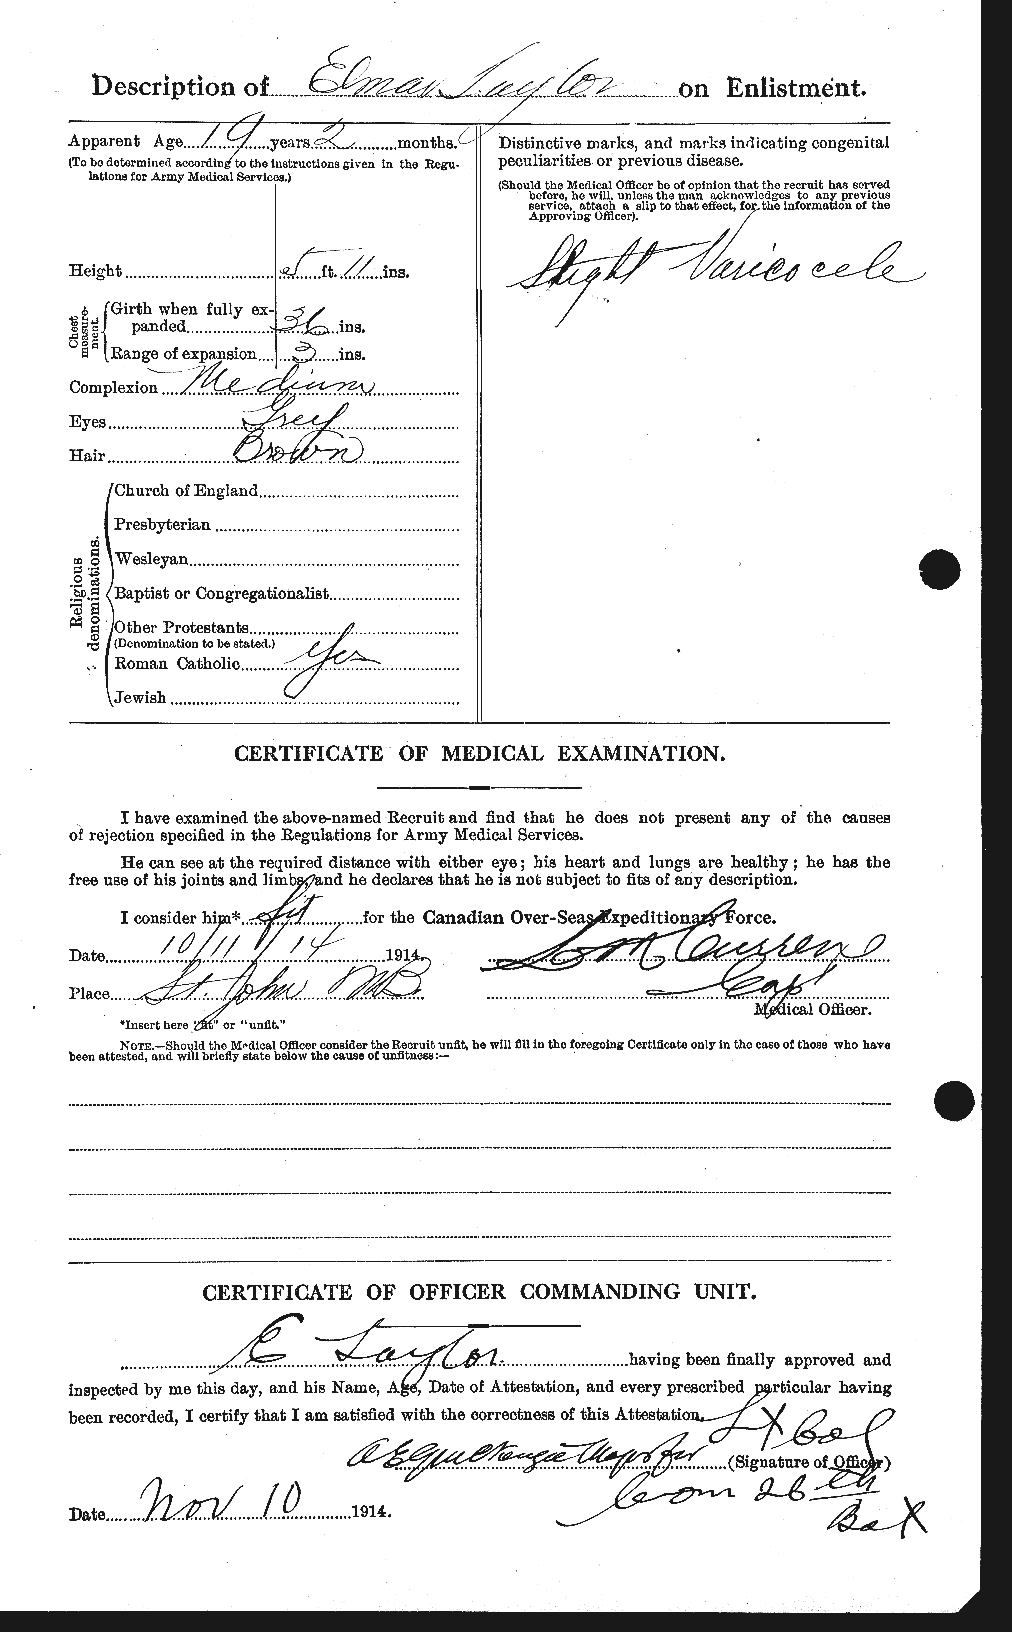 Dossiers du Personnel de la Première Guerre mondiale - CEC 627351b